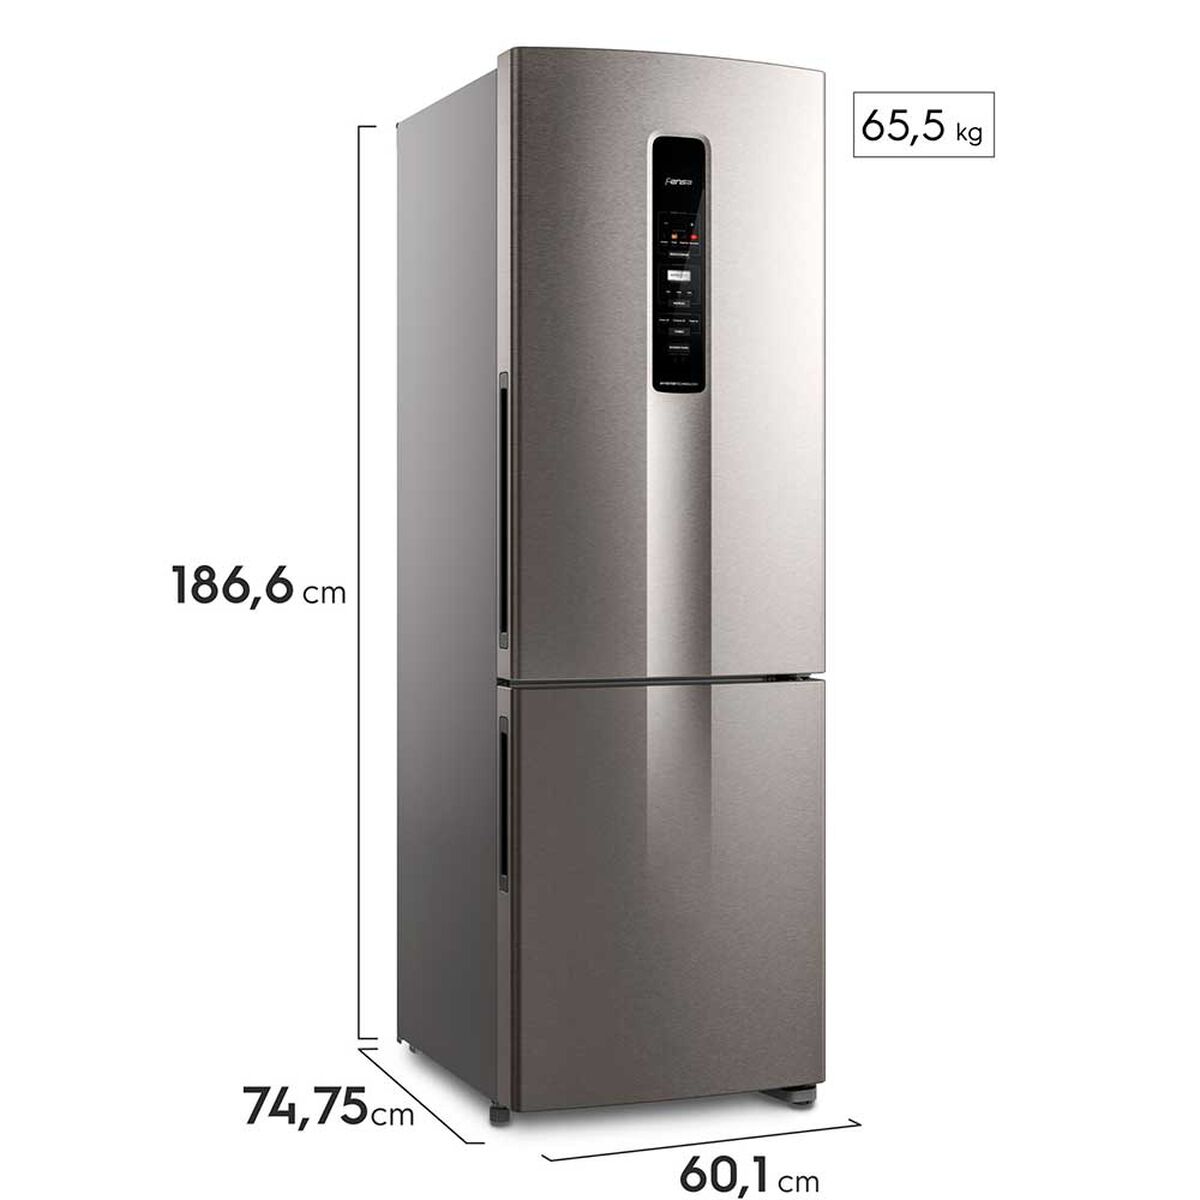 Refrigerador No Frost Fensa IB45S 400 lts